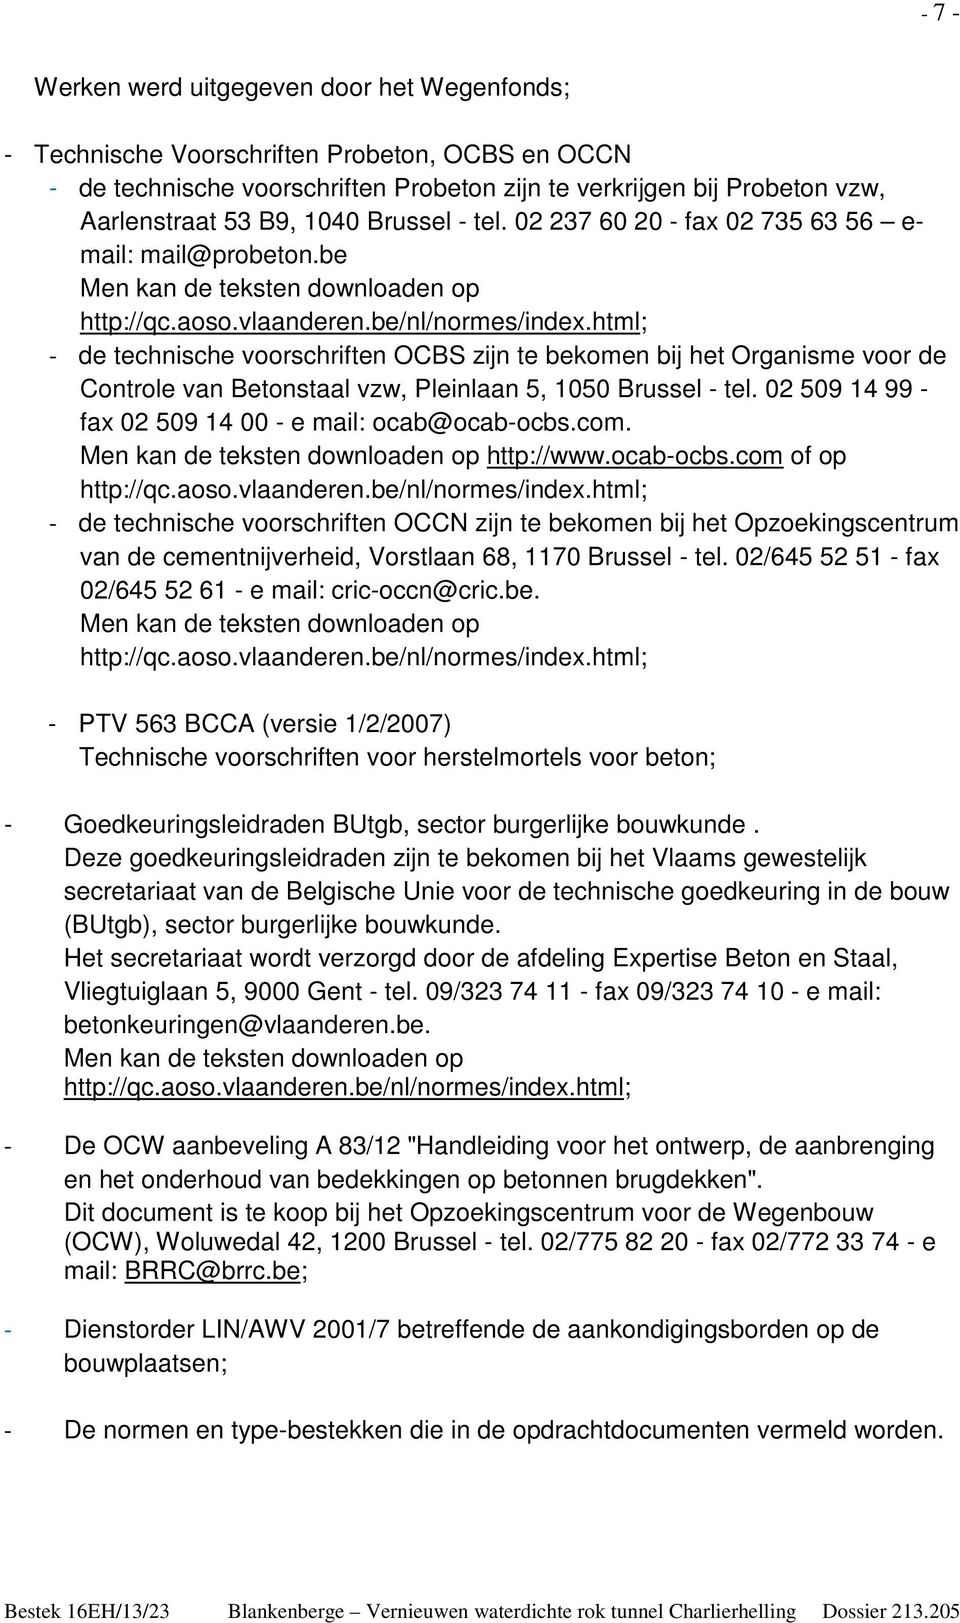 html; - de technische voorschriften OCBS zijn te bekomen bij het Organisme voor de Controle van Betonstaal vzw, Pleinlaan 5, 1050 Brussel - tel.